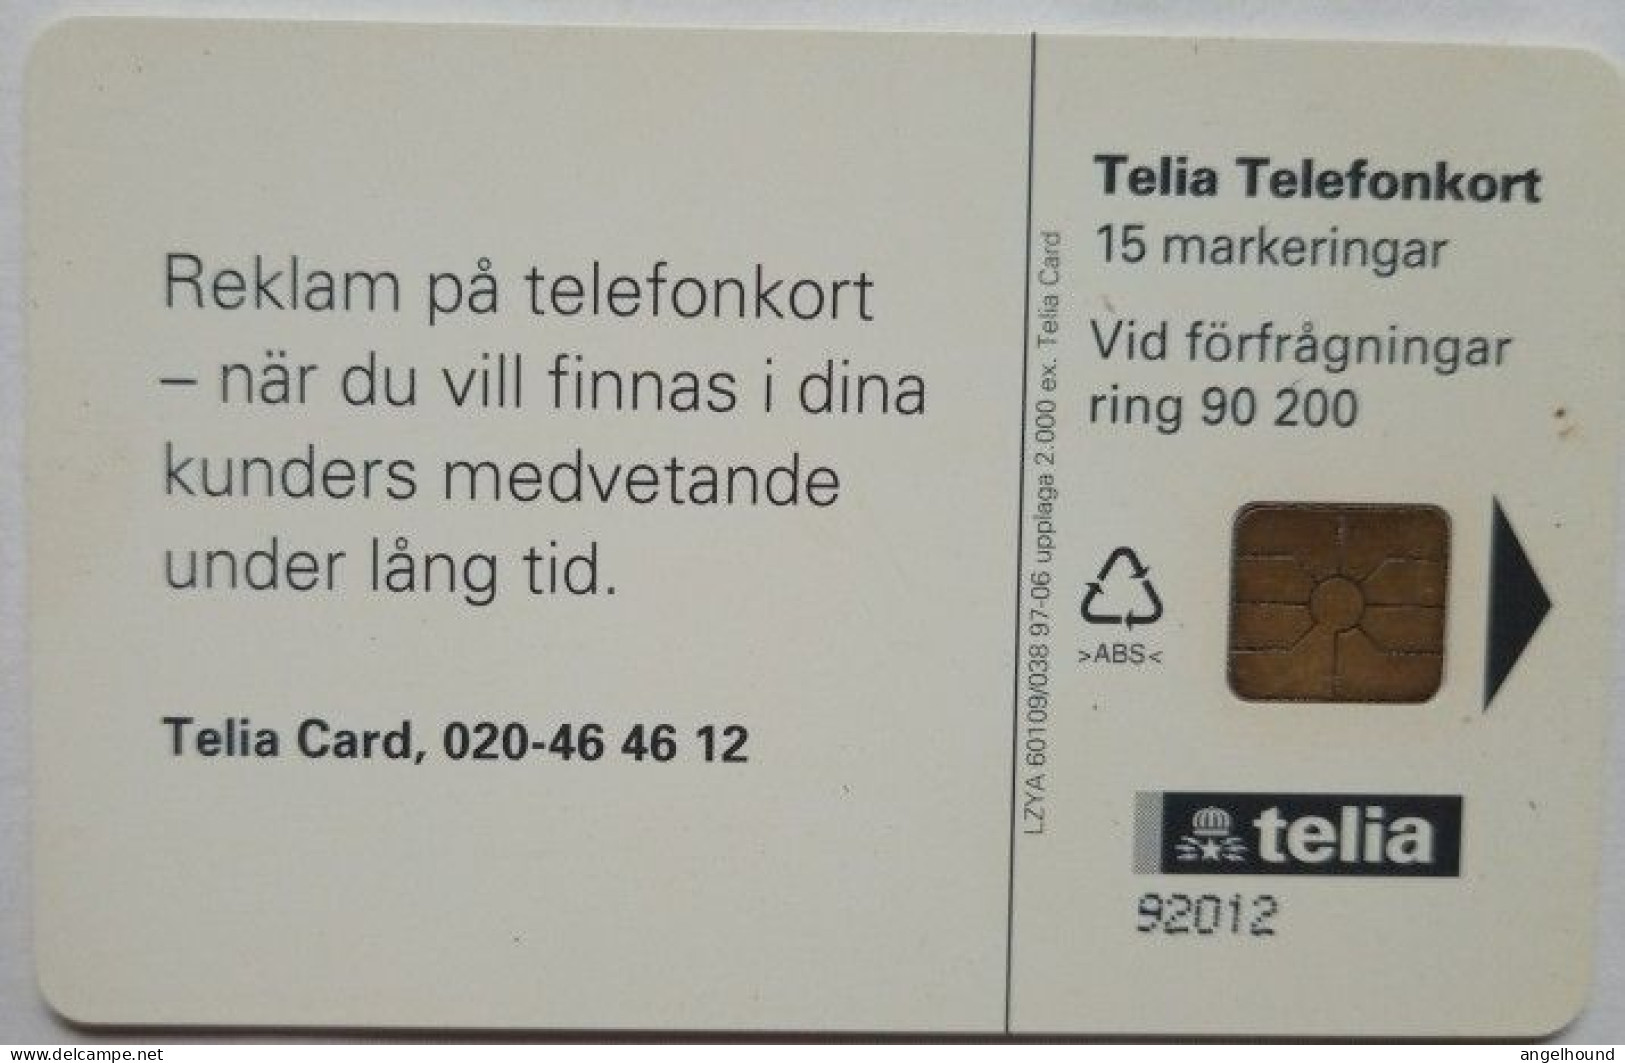 Sweden Mk 15 MINT Chip Card - Smygreklam I - Schweden